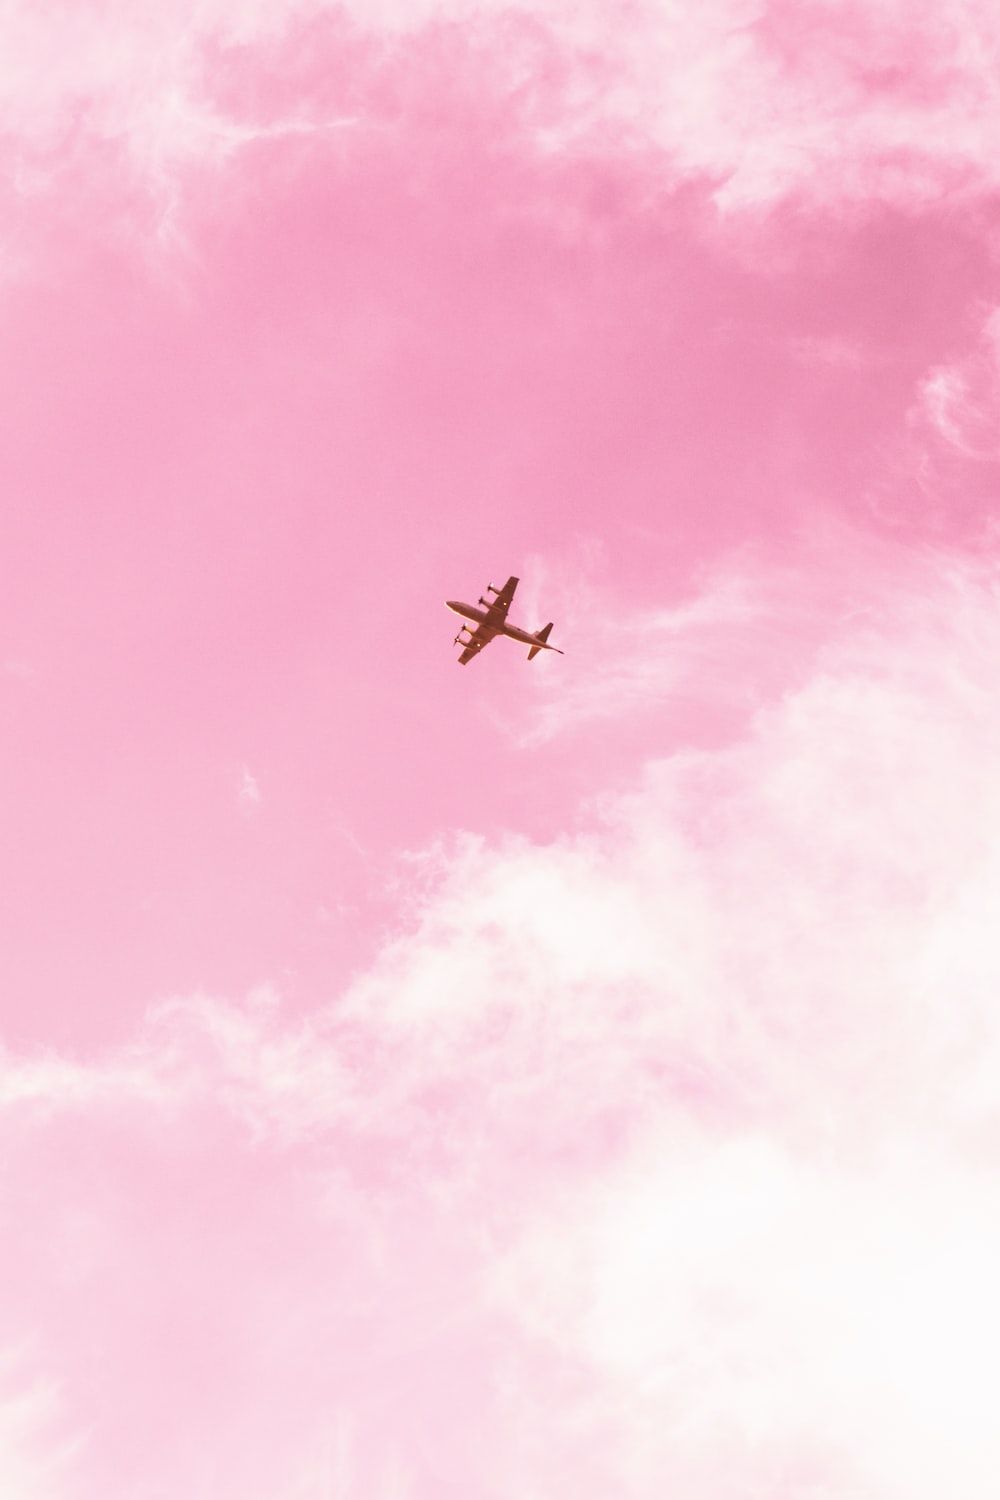  Flugzeug Hintergrundbild 1000x1500. Foto zum Thema Flugzeug am Himmel während des Tages